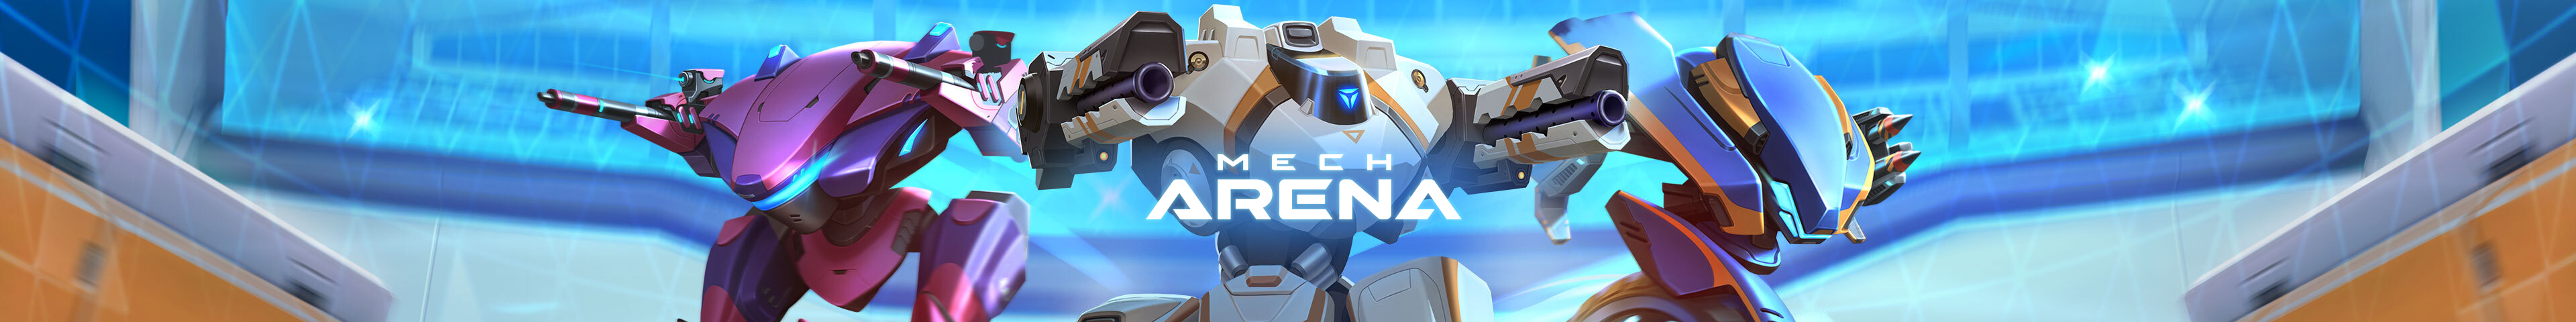 Mech Arena - UA